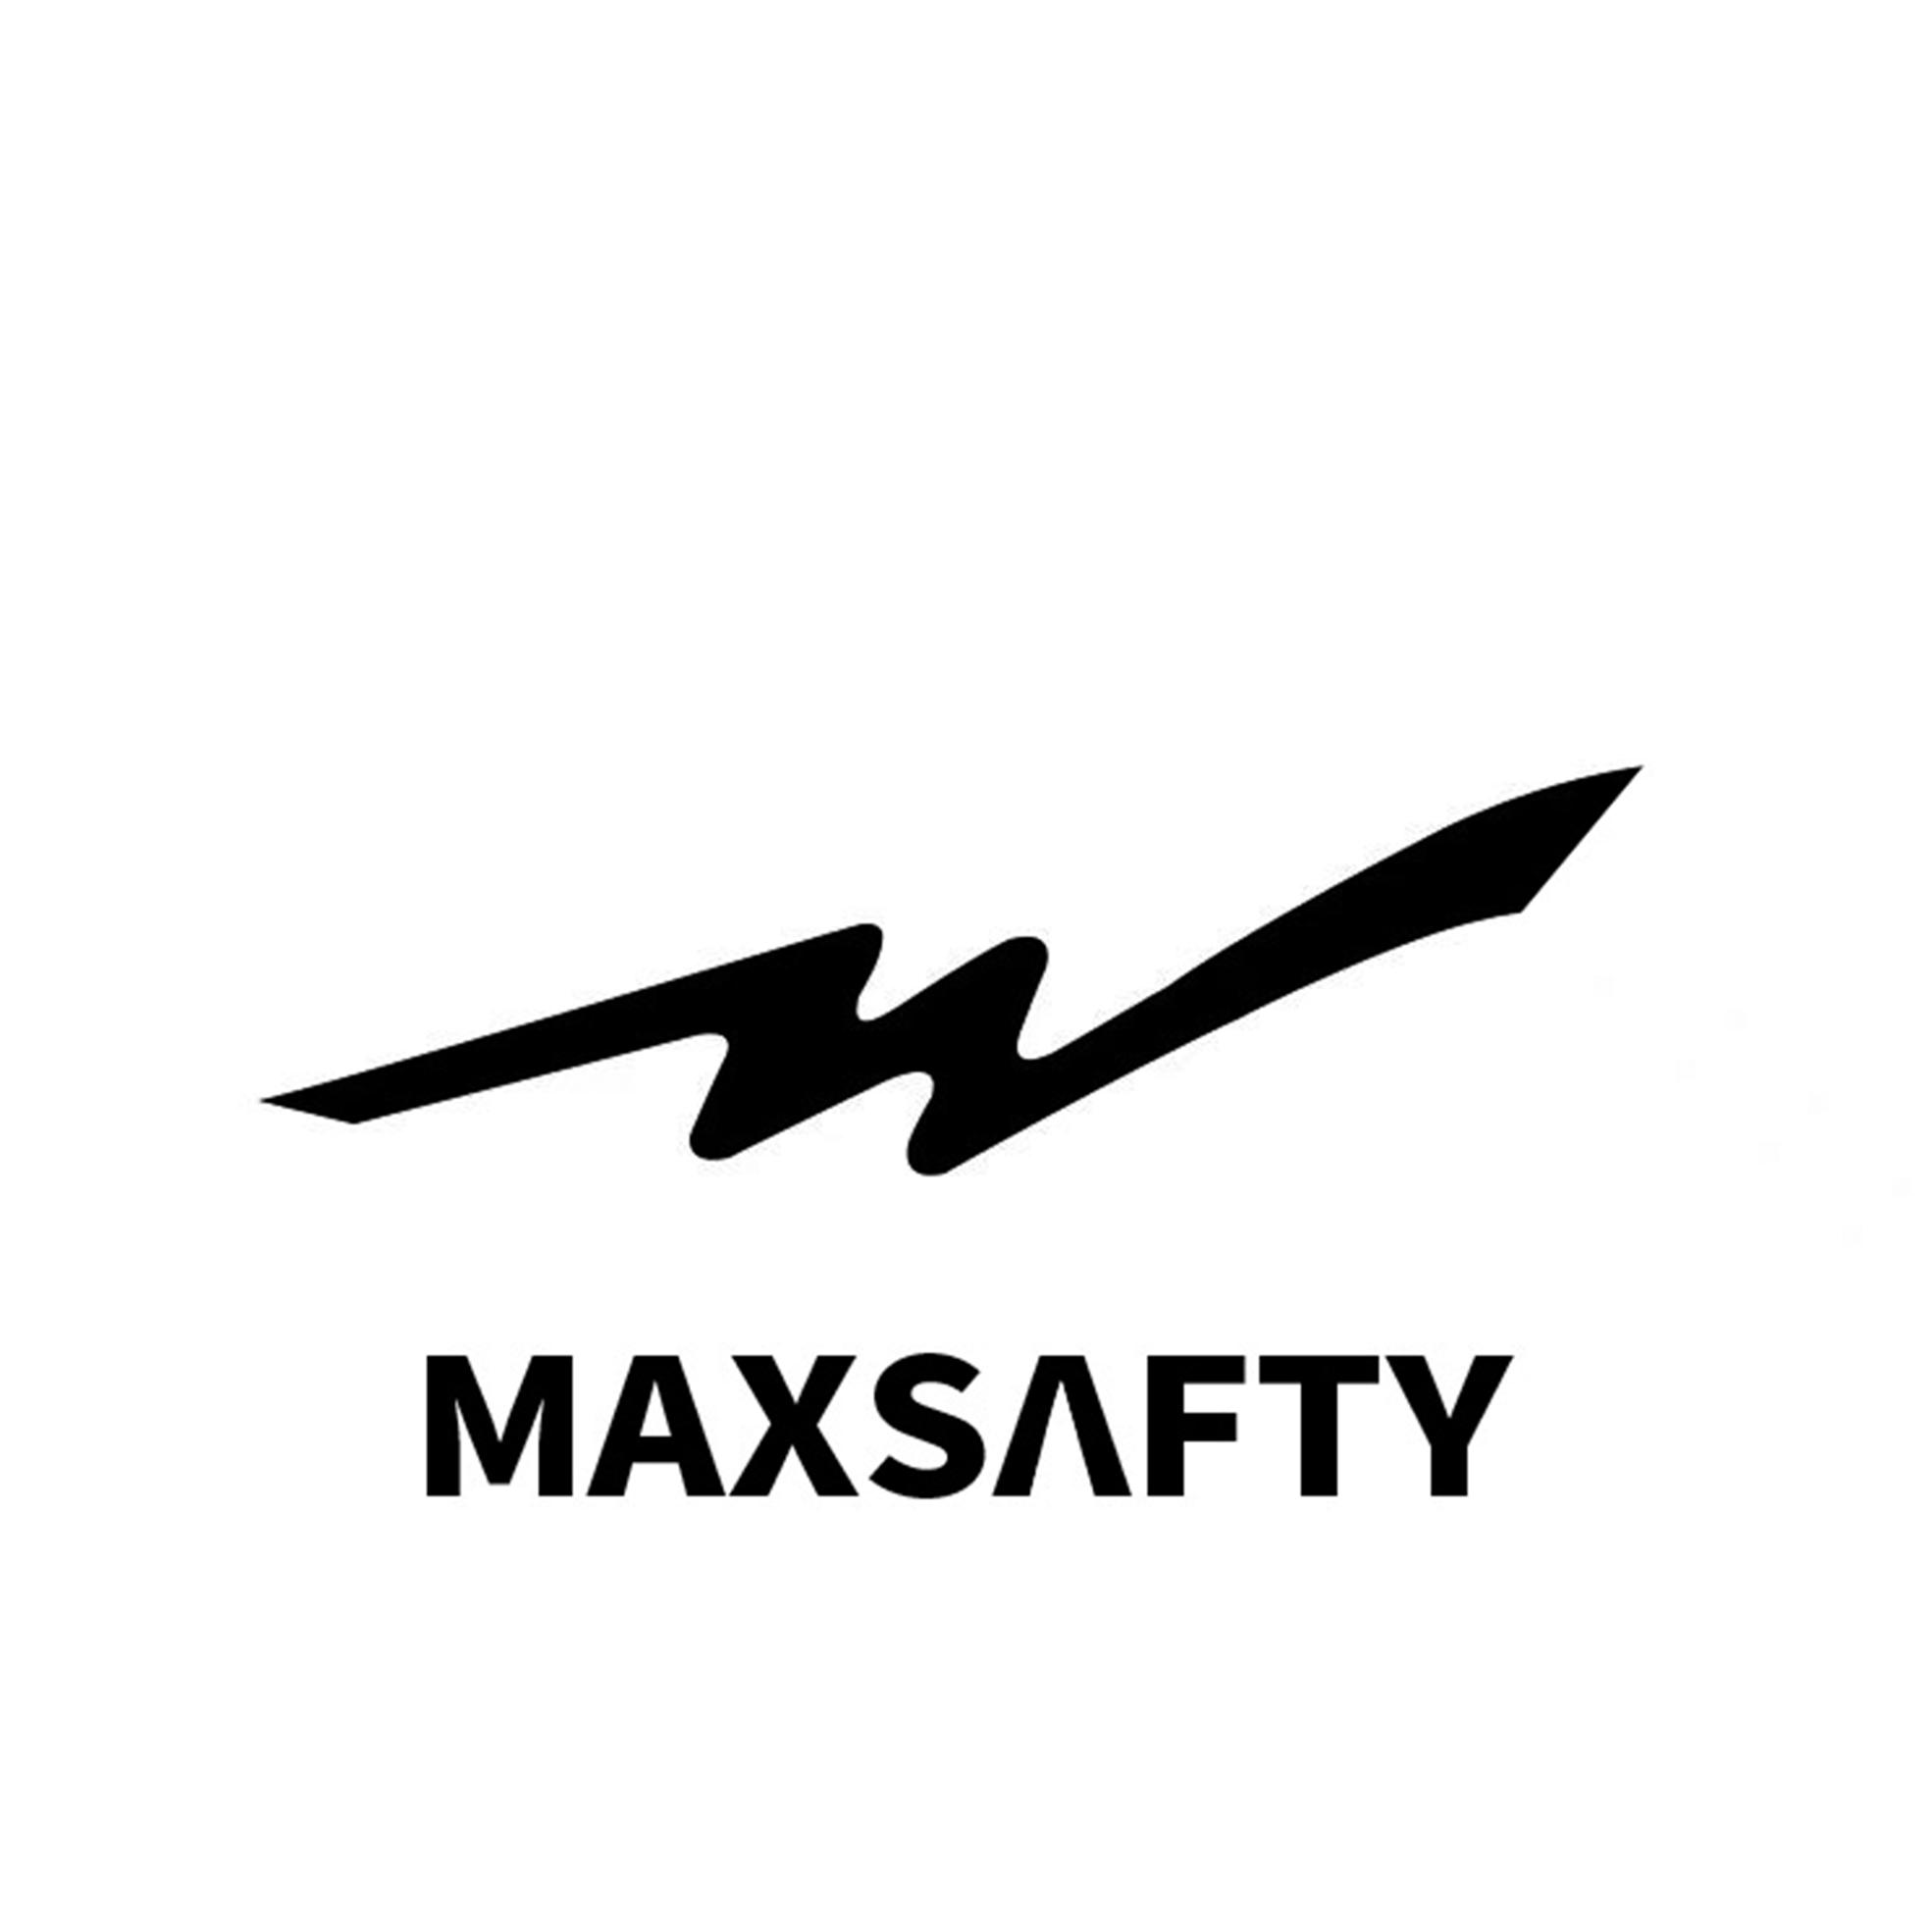 MAXSAFTY 商标公告